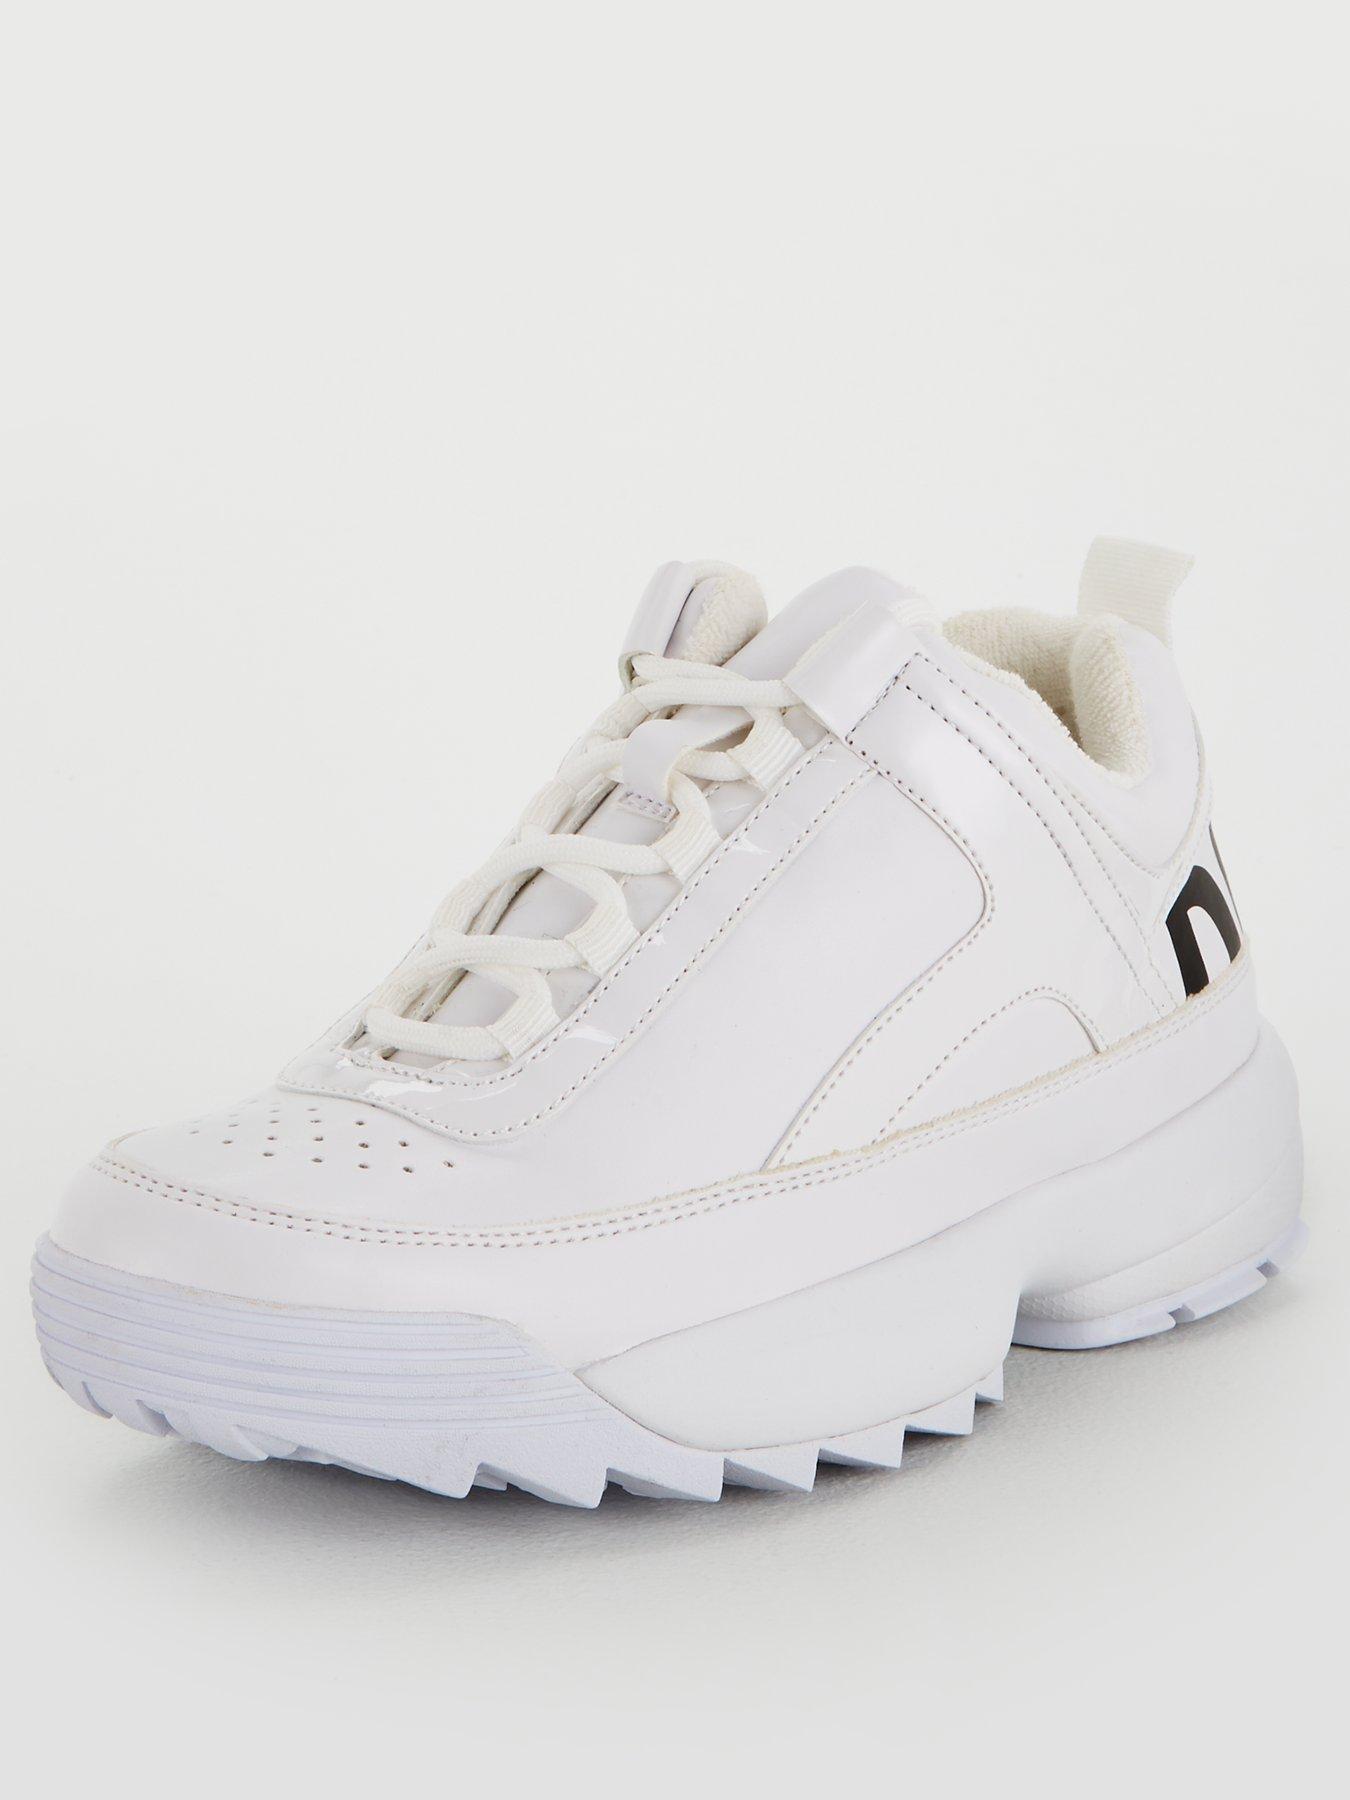 DKNY Dani Lace Up Sneaker - White 